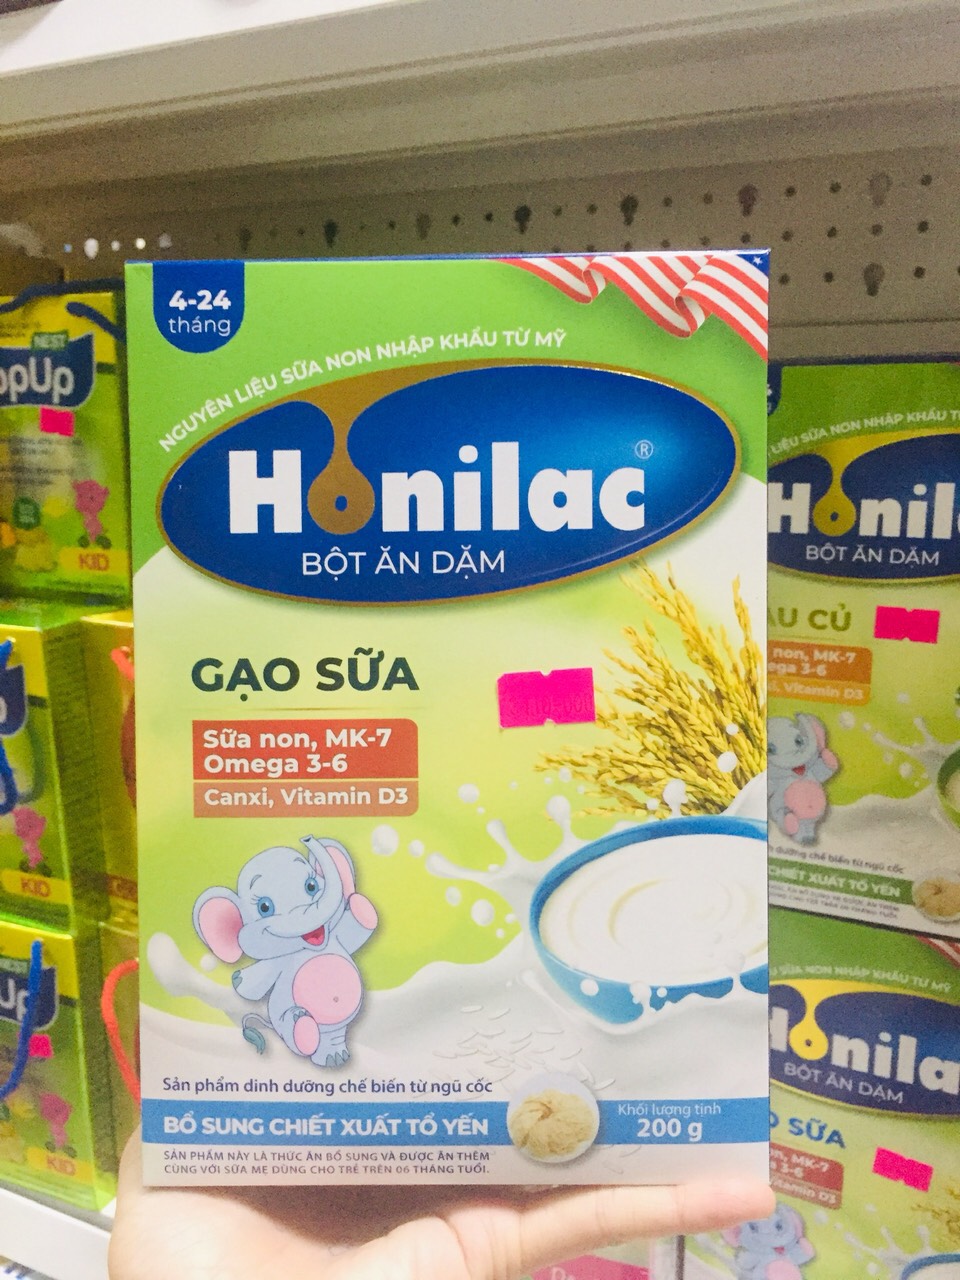 Bột ăn dặm HONILAC sản phẩm dinh dưỡng chế biến từ ngũ cốc 200g cho trẻ từ